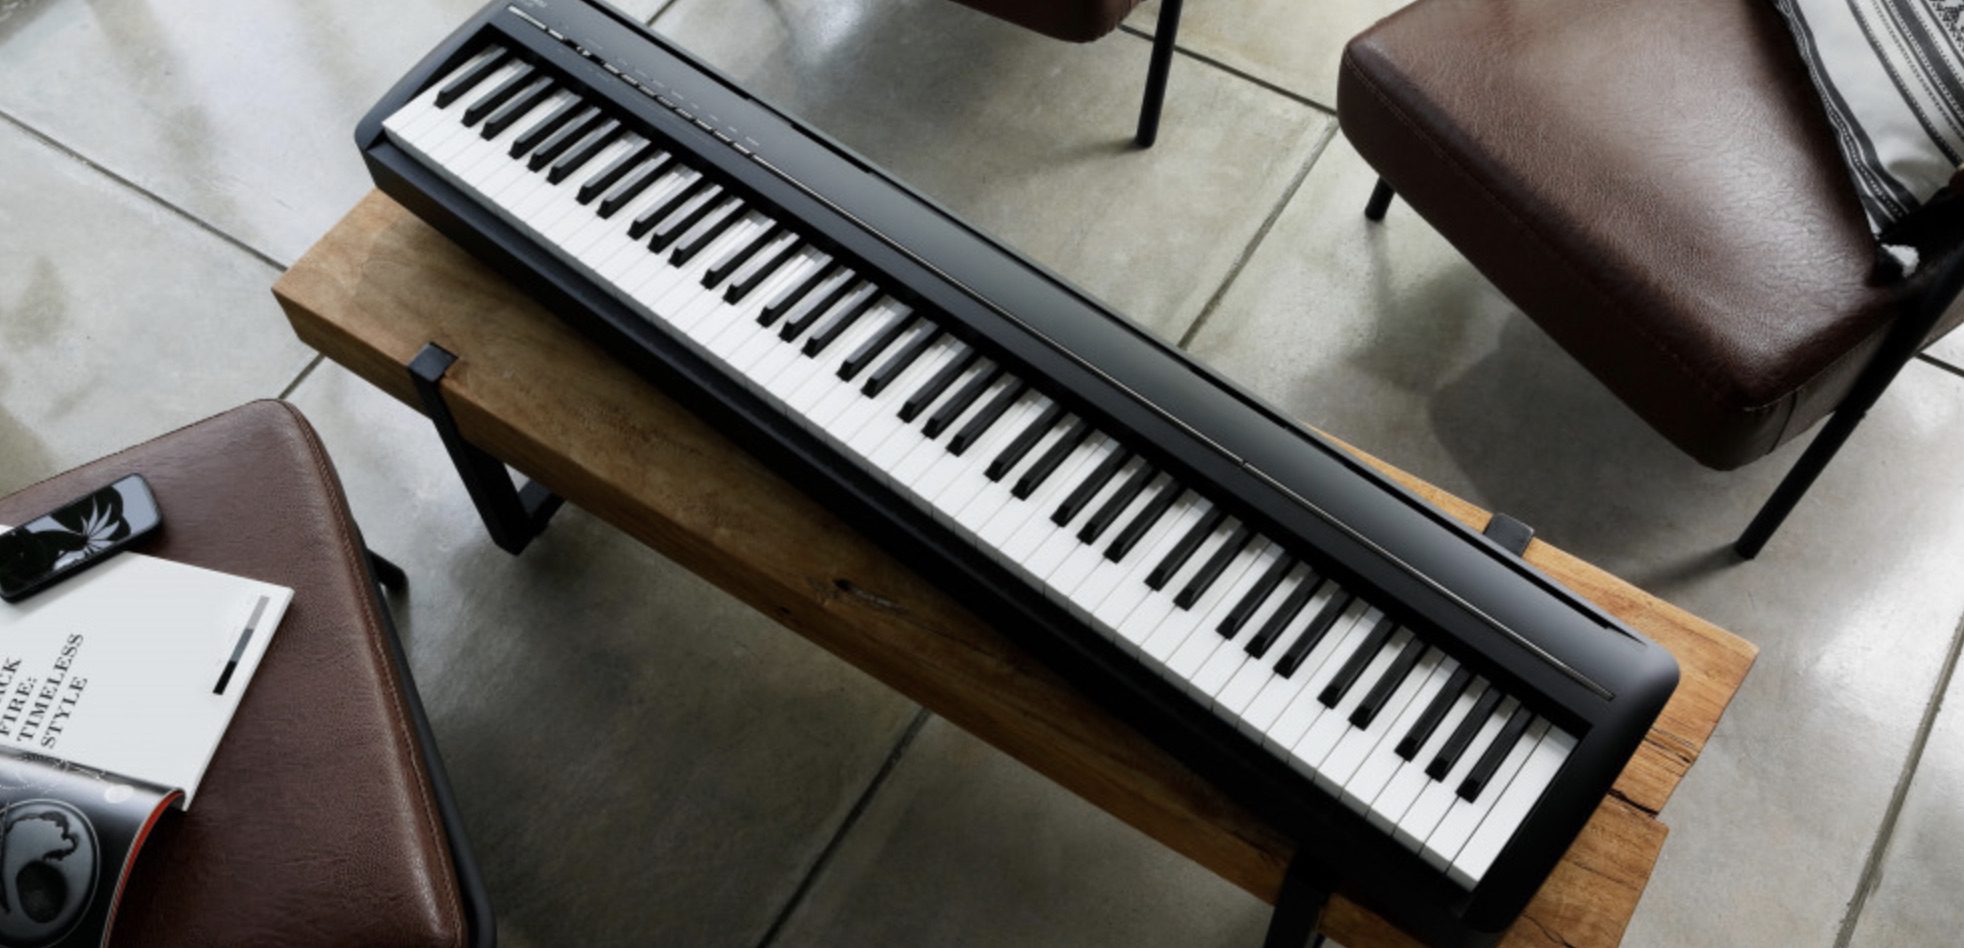 Yamaha P-125 - Piano numérique- L'Atelier du Piano